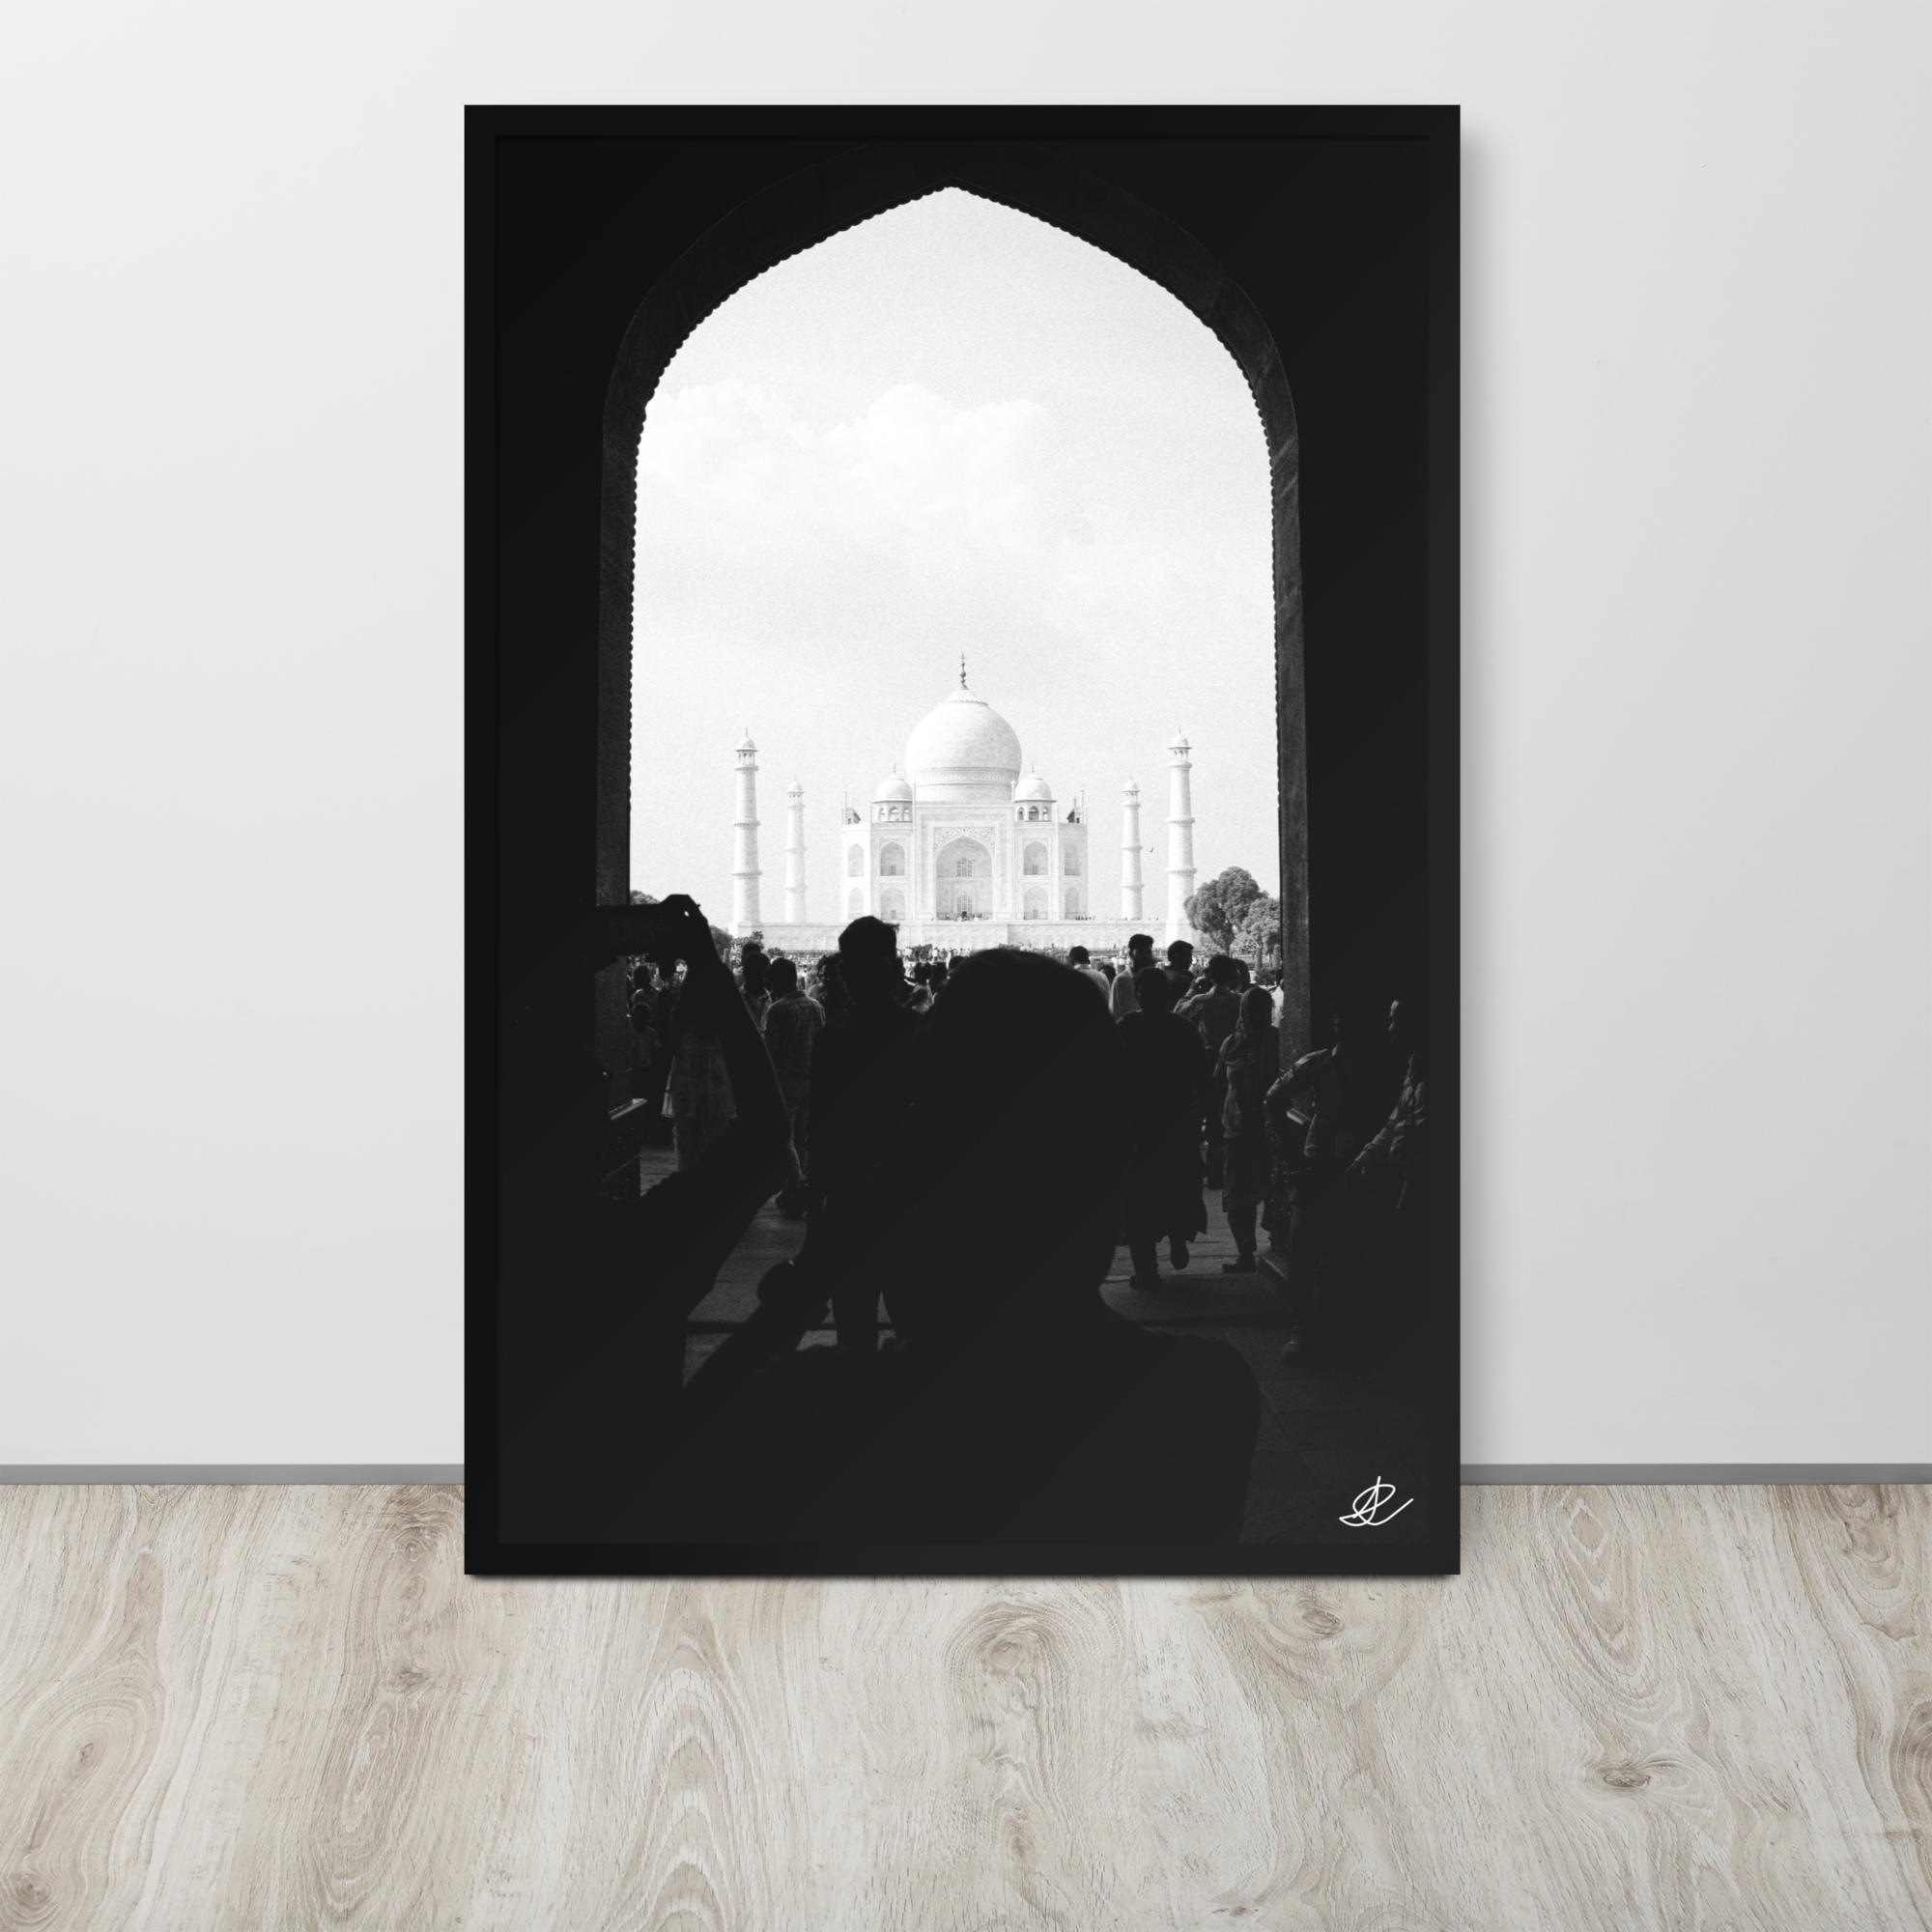 Photographie encadrée 'Taj Mahal' par Ilan Shoham, capturant l'agitation d'Agra avec le Taj Mahal serein à l'horizon, impression de qualité musée sur papier mat épais.